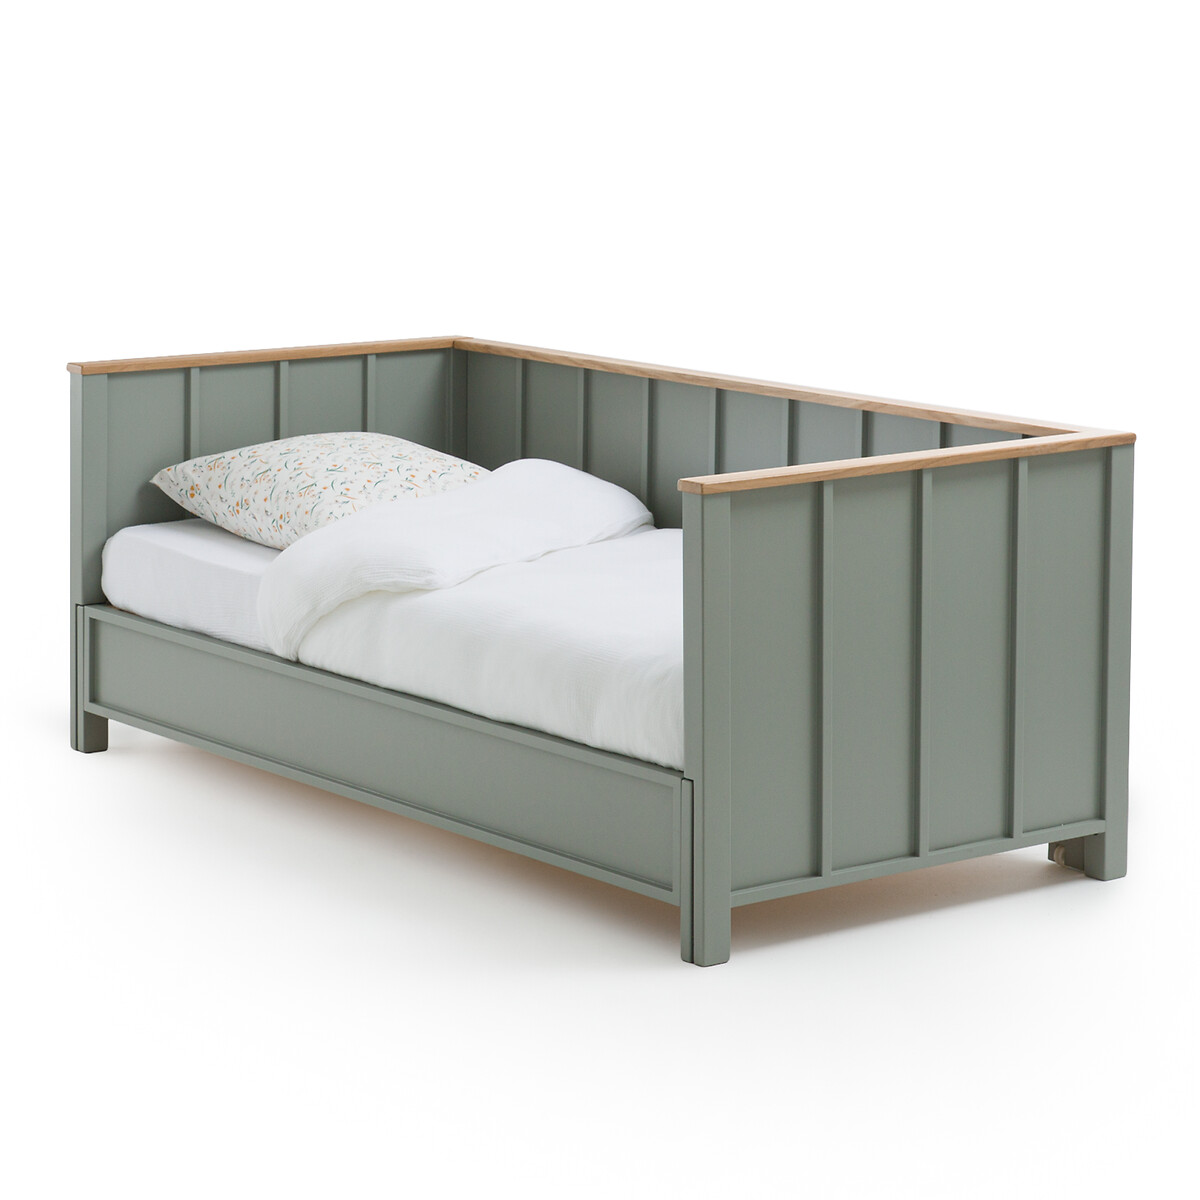 Кровать-банкетка складная Eugne  90 x 200 см зеленый LaRedoute, размер 90 x 200 см - фото 1